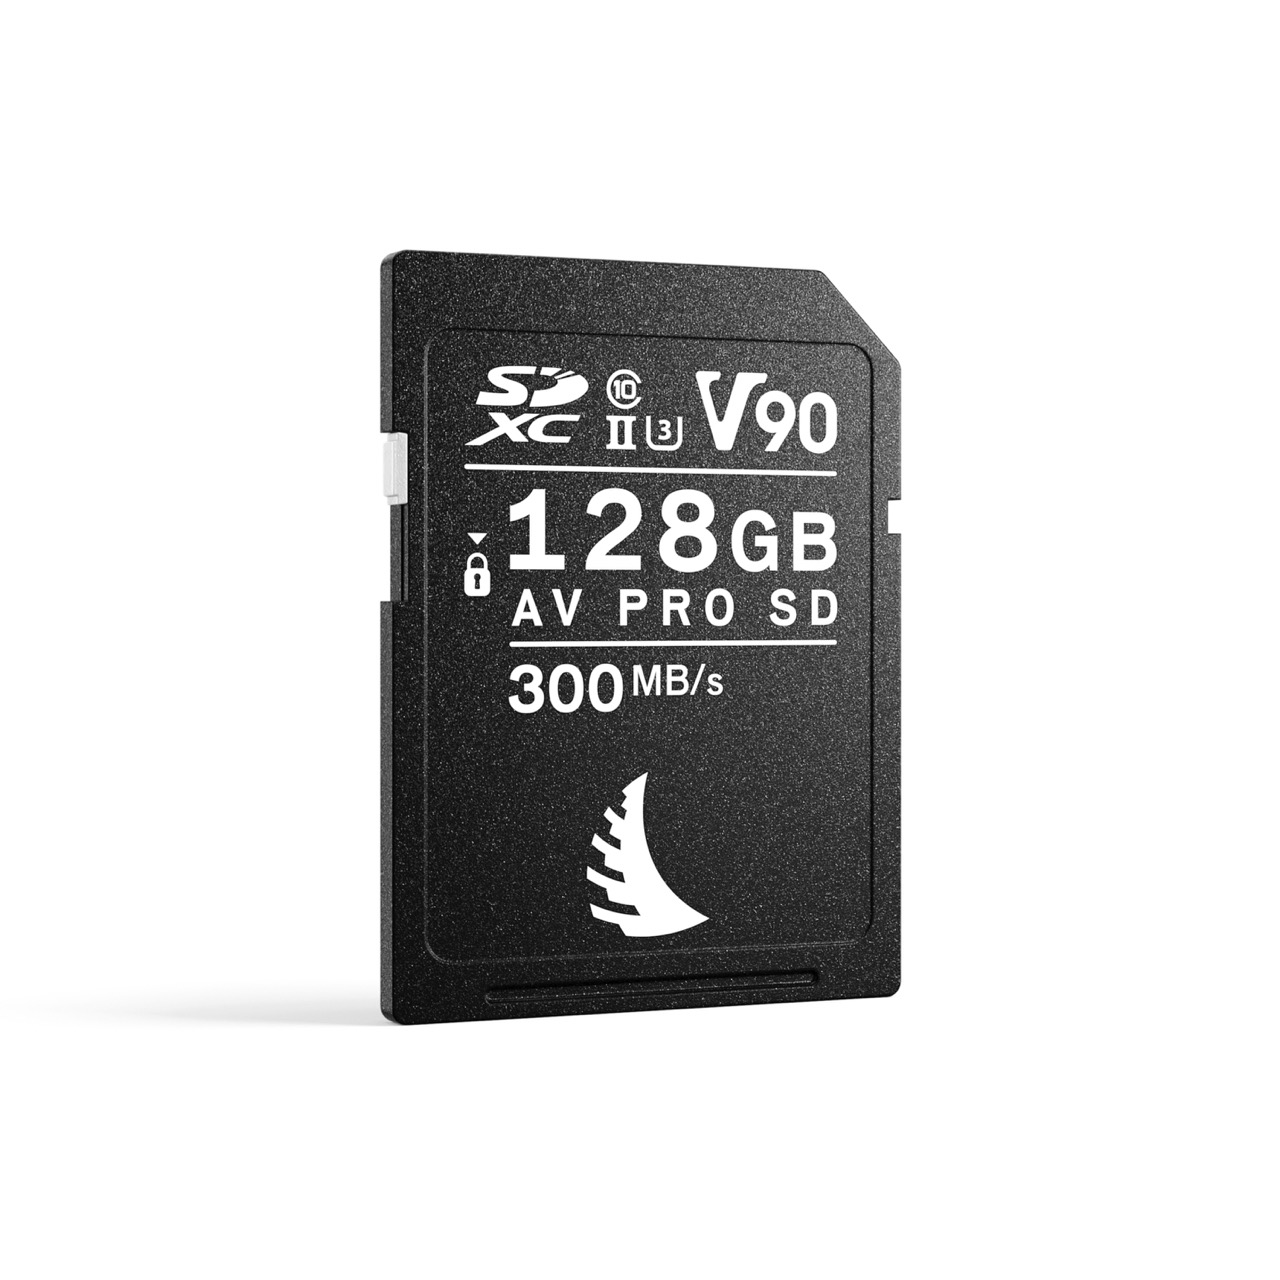 AV PRO SD V90 MK2 128 GB